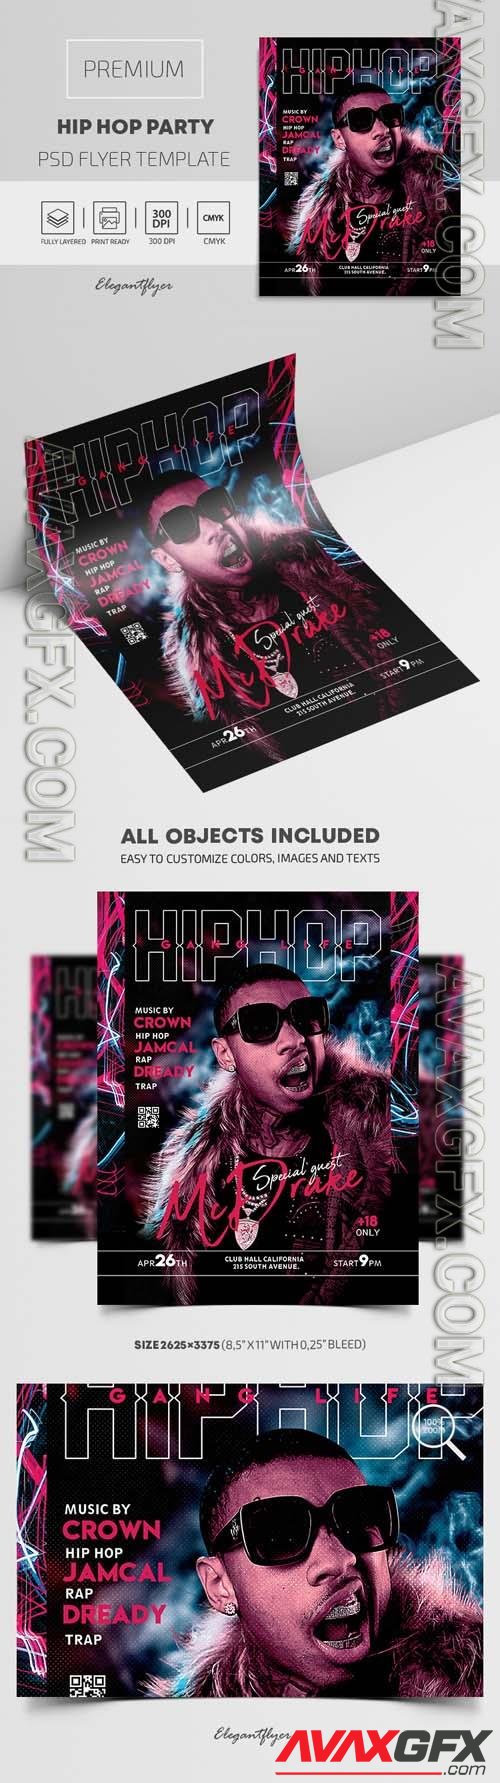 Hip Hop Party Premium PSD Flyer Template vol 2